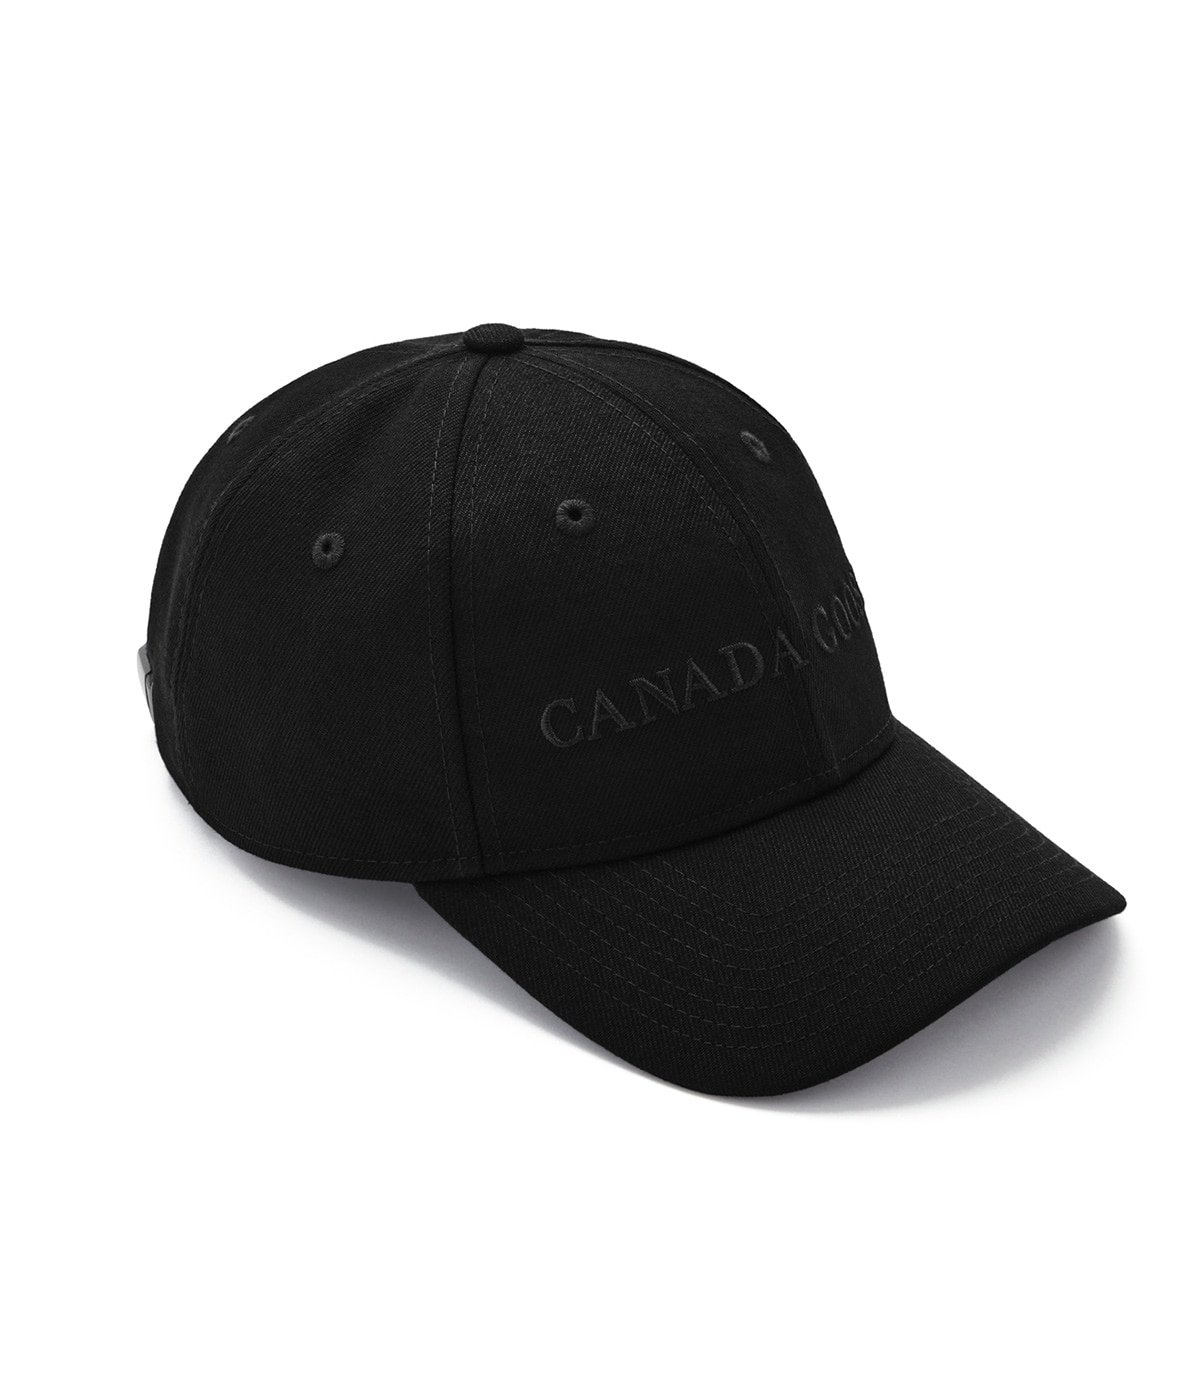 WORDMARK ADJUSTABLE CAP(ワードマーク アジャスタブル キャップ) CANADA GOOSE(カナダグース) 帽子  キャップ (メンズ レディース)の通販 ARKnets(アークネッツ) 公式通販 【正規取扱店】